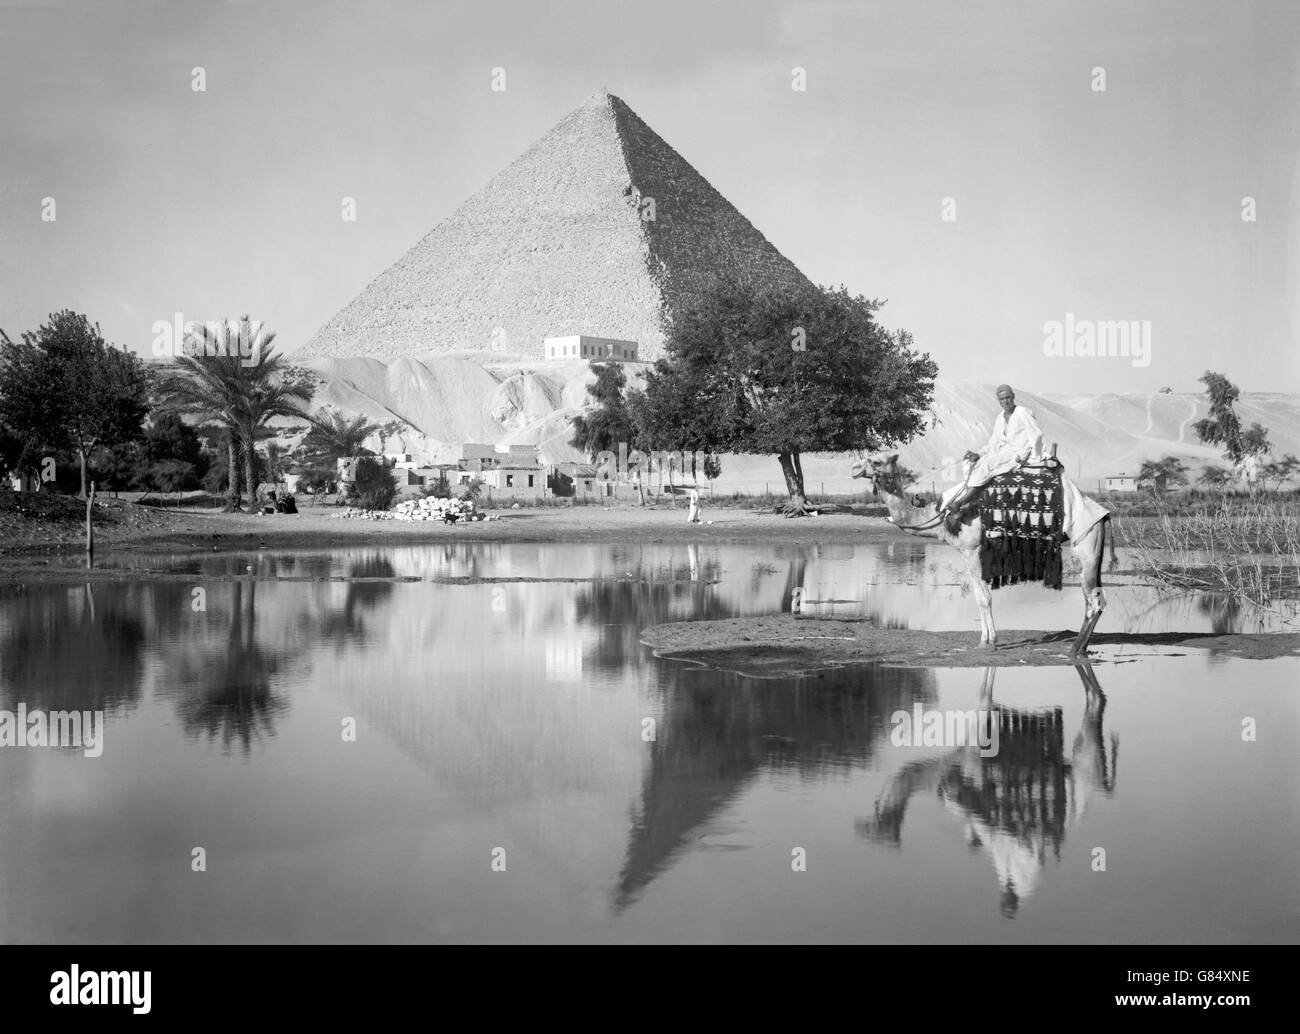 La grande pyramide de Gizeh, au début du xxe siècle. Photo prise entre 1934 et 1939 par colonie américaine Service Photo. Banque D'Images